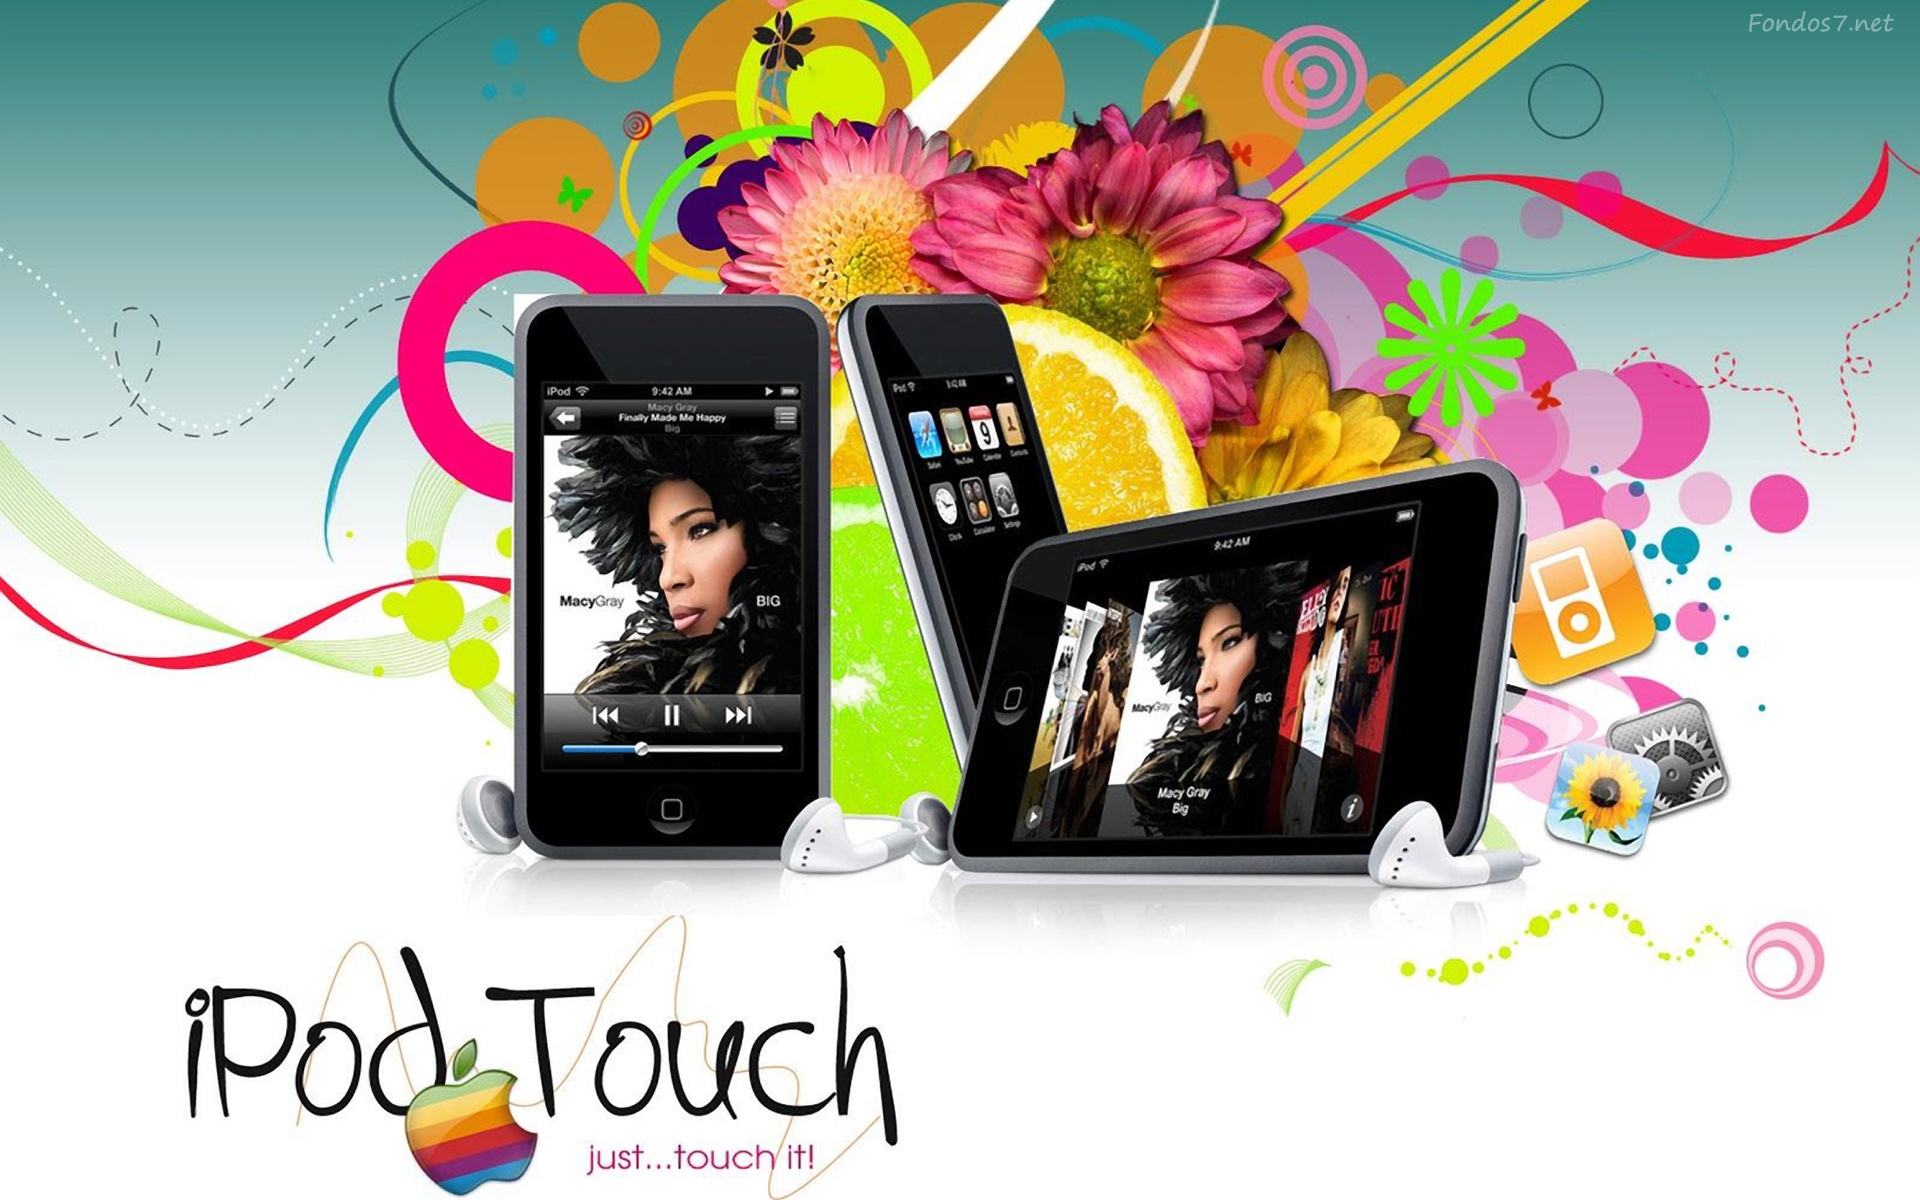 Descargar Fondos de pantalla ipod touch hd widescreen Gratis imagenes